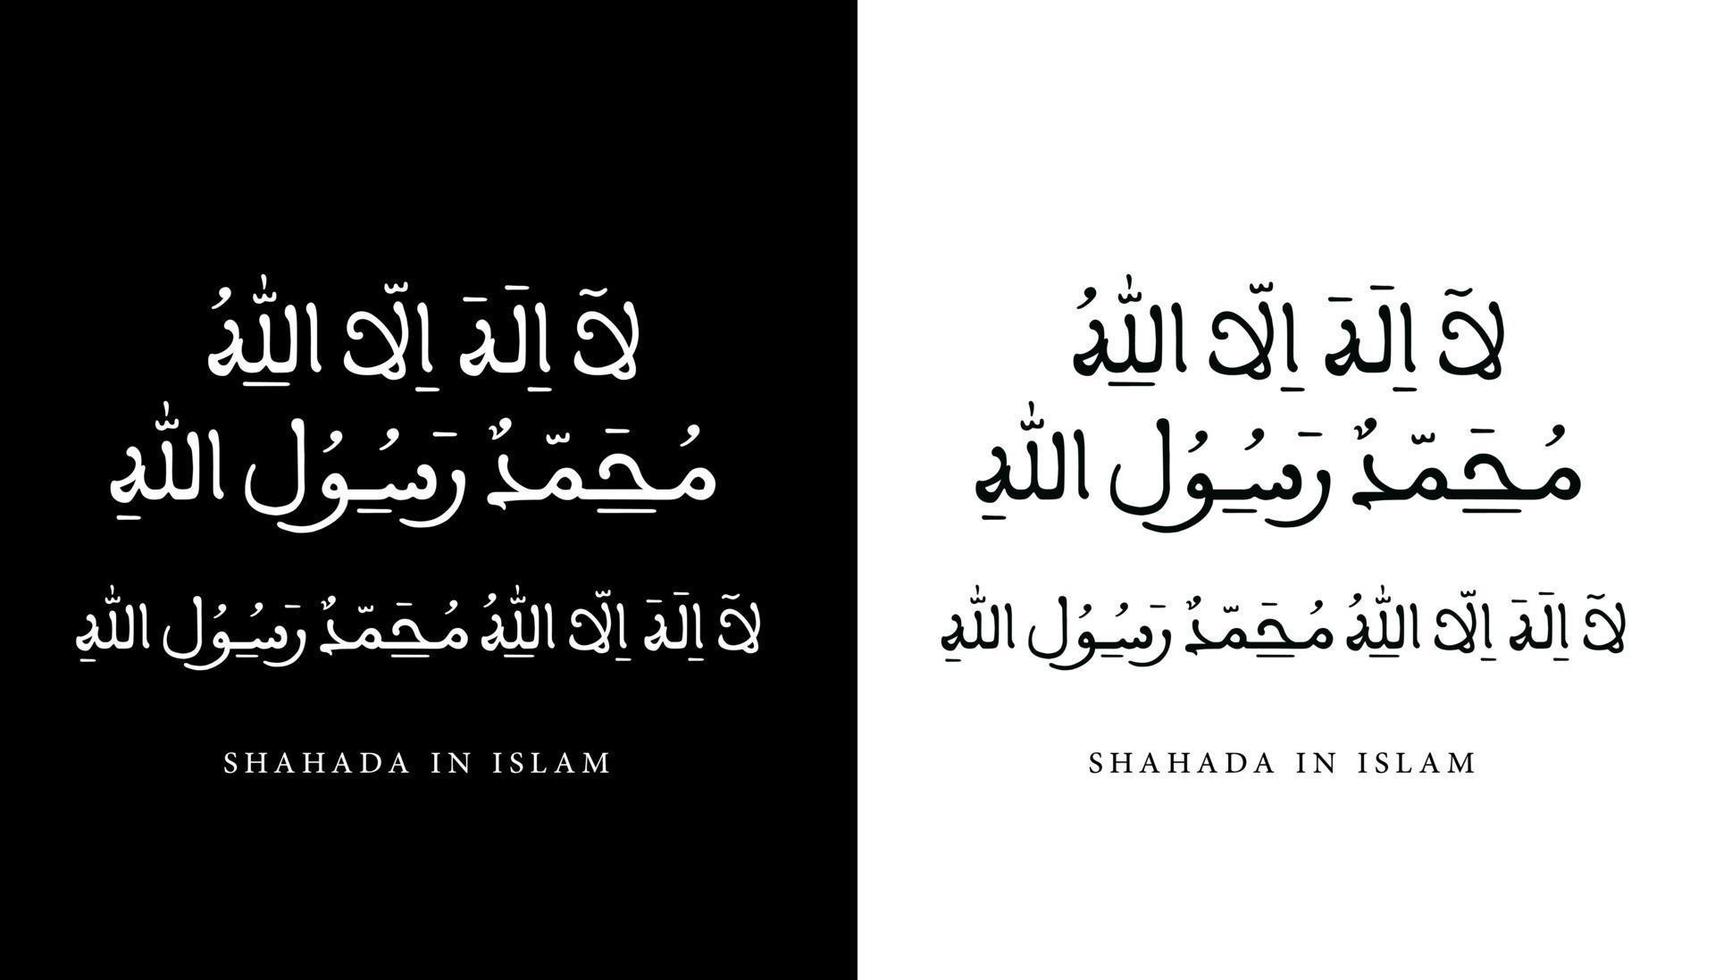 nome della calligrafia araba tradotto 'shahada in islam' lettere arabe alfabeto font lettering logo islamico illustrazione vettoriale